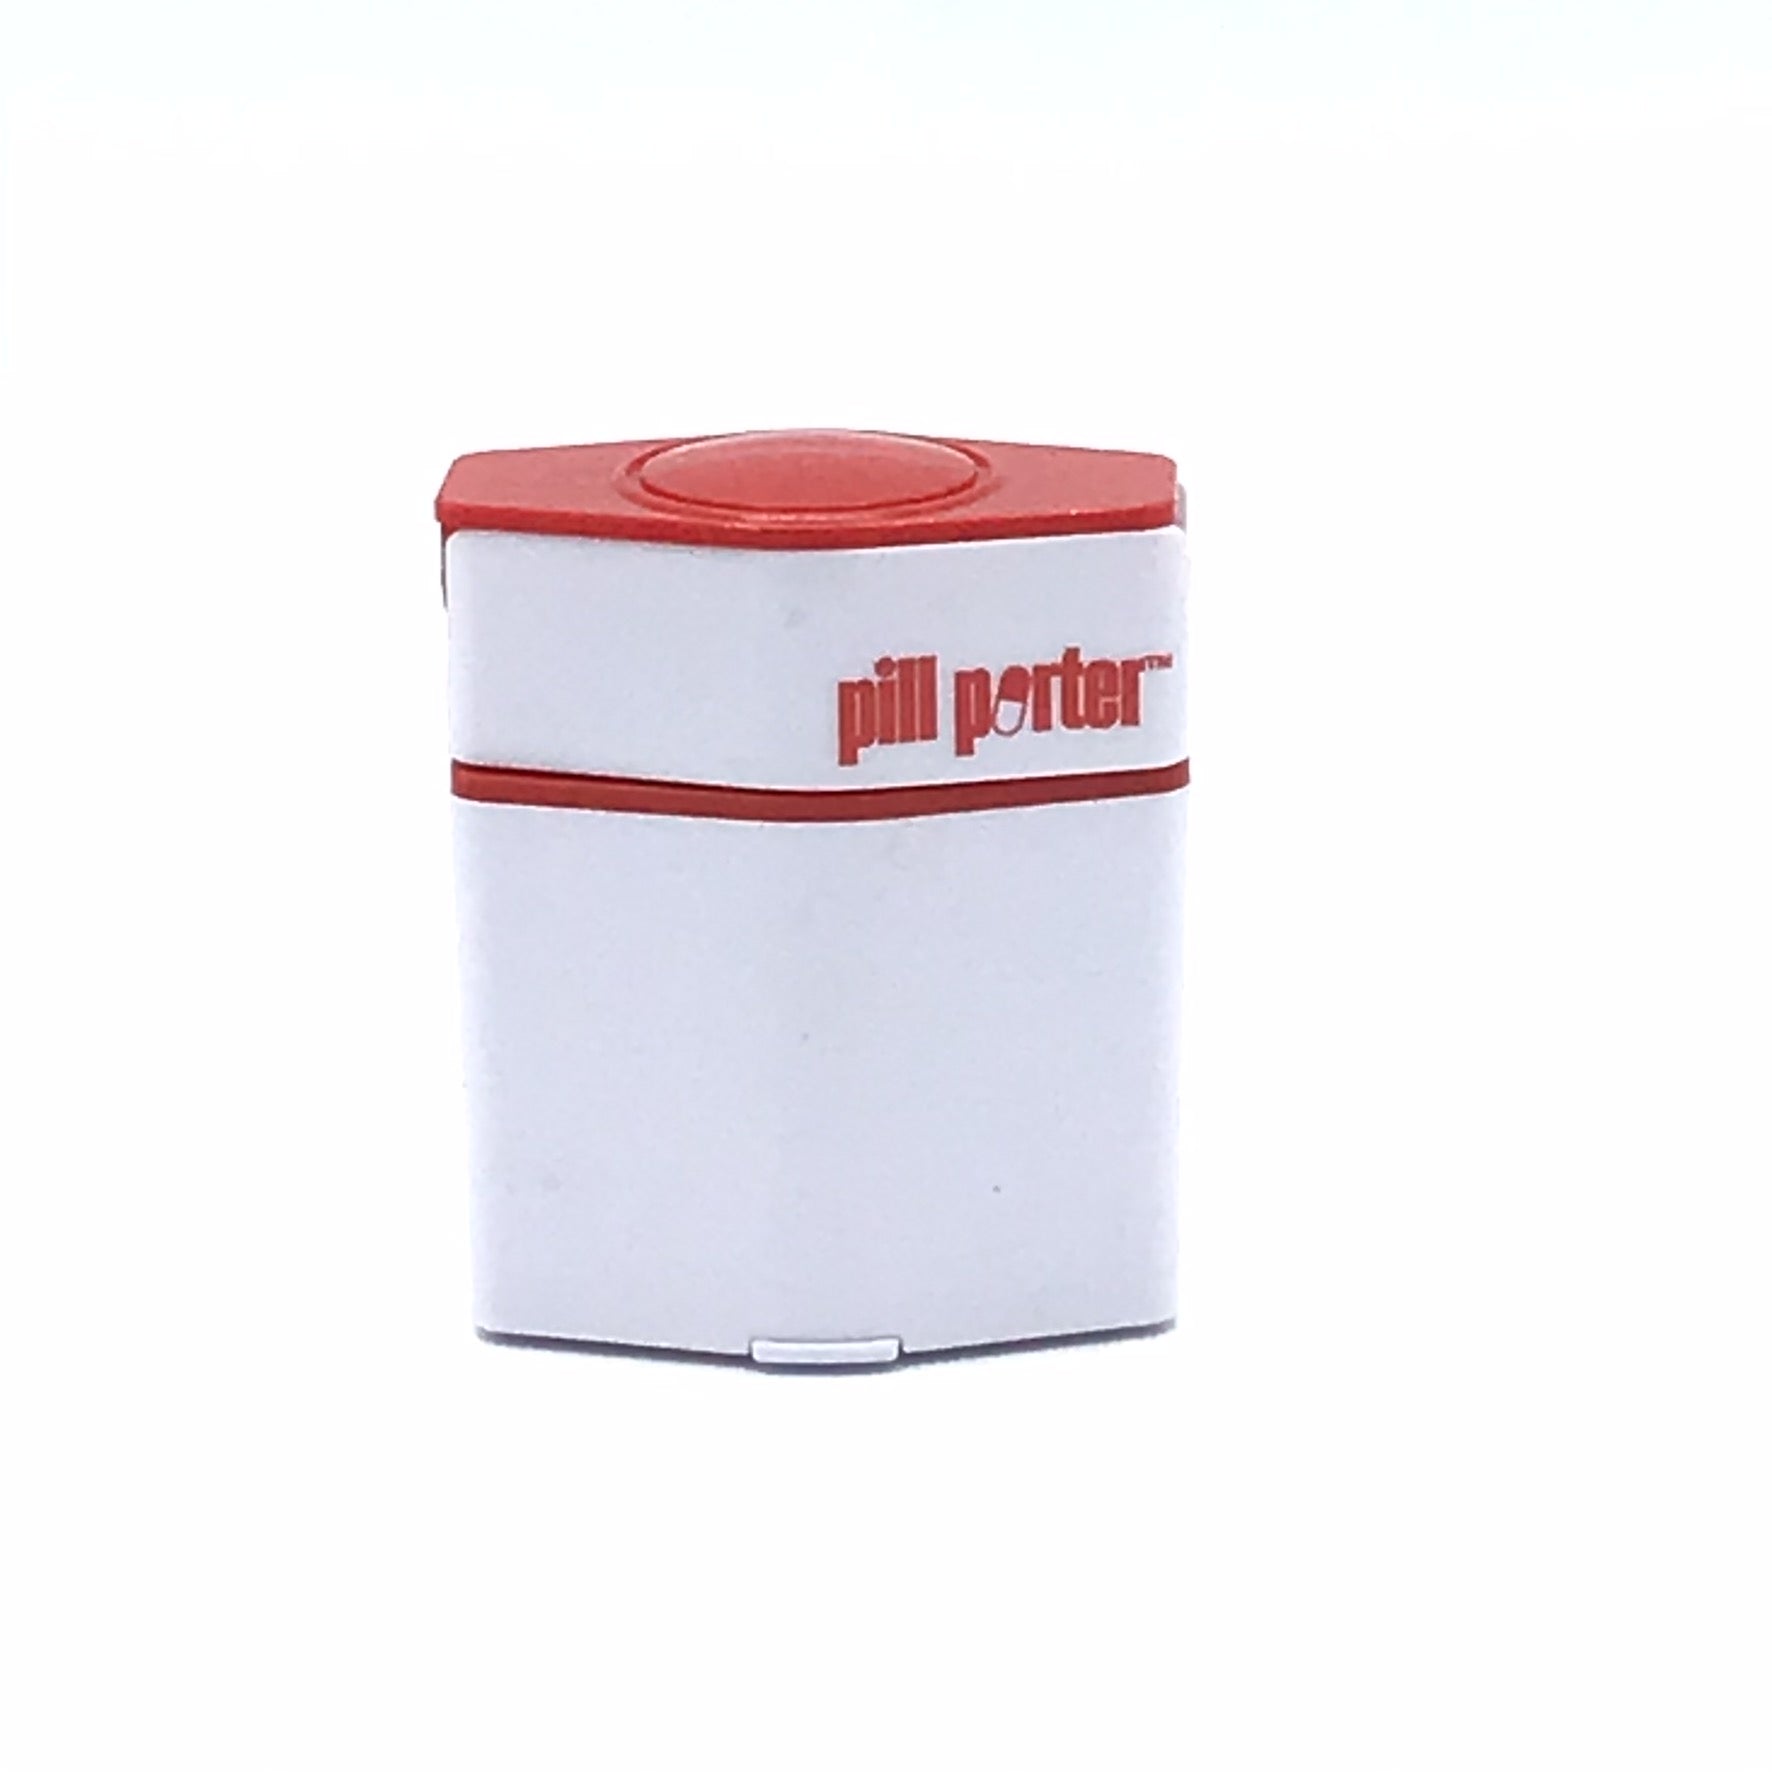 Pill Porter